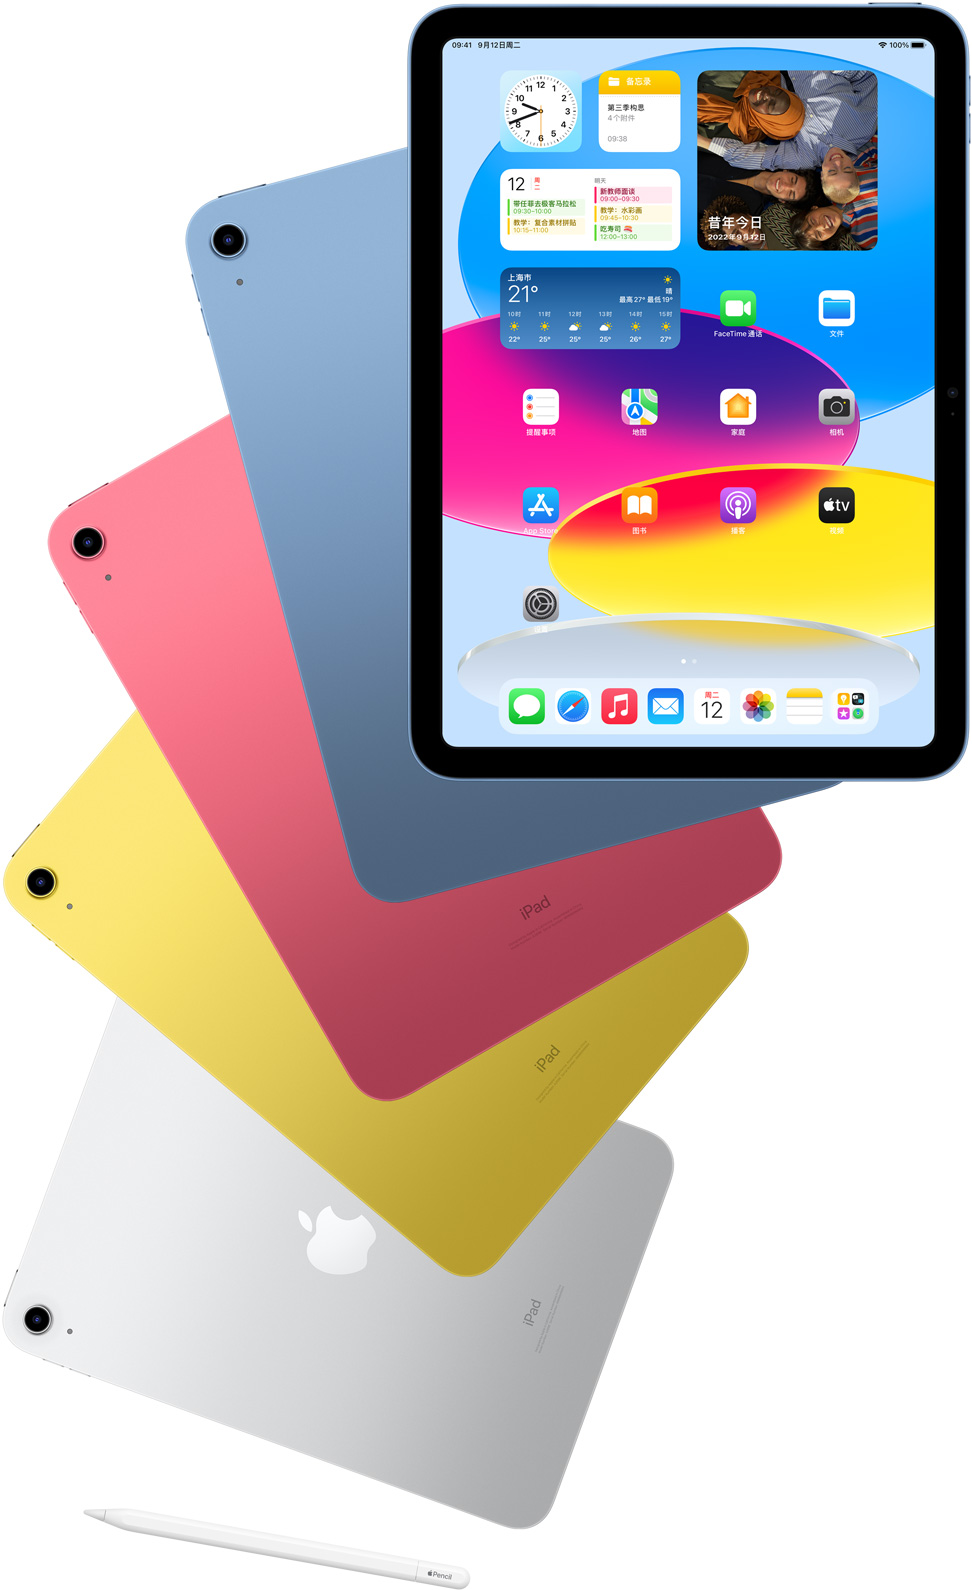 展示着主屏幕的 iPad 正面视图，以及蓝色、粉色、黄色和银色 iPad 的机身背面。一支 Apple Pencil 摆放在所陈列的几款 iPad 附近。